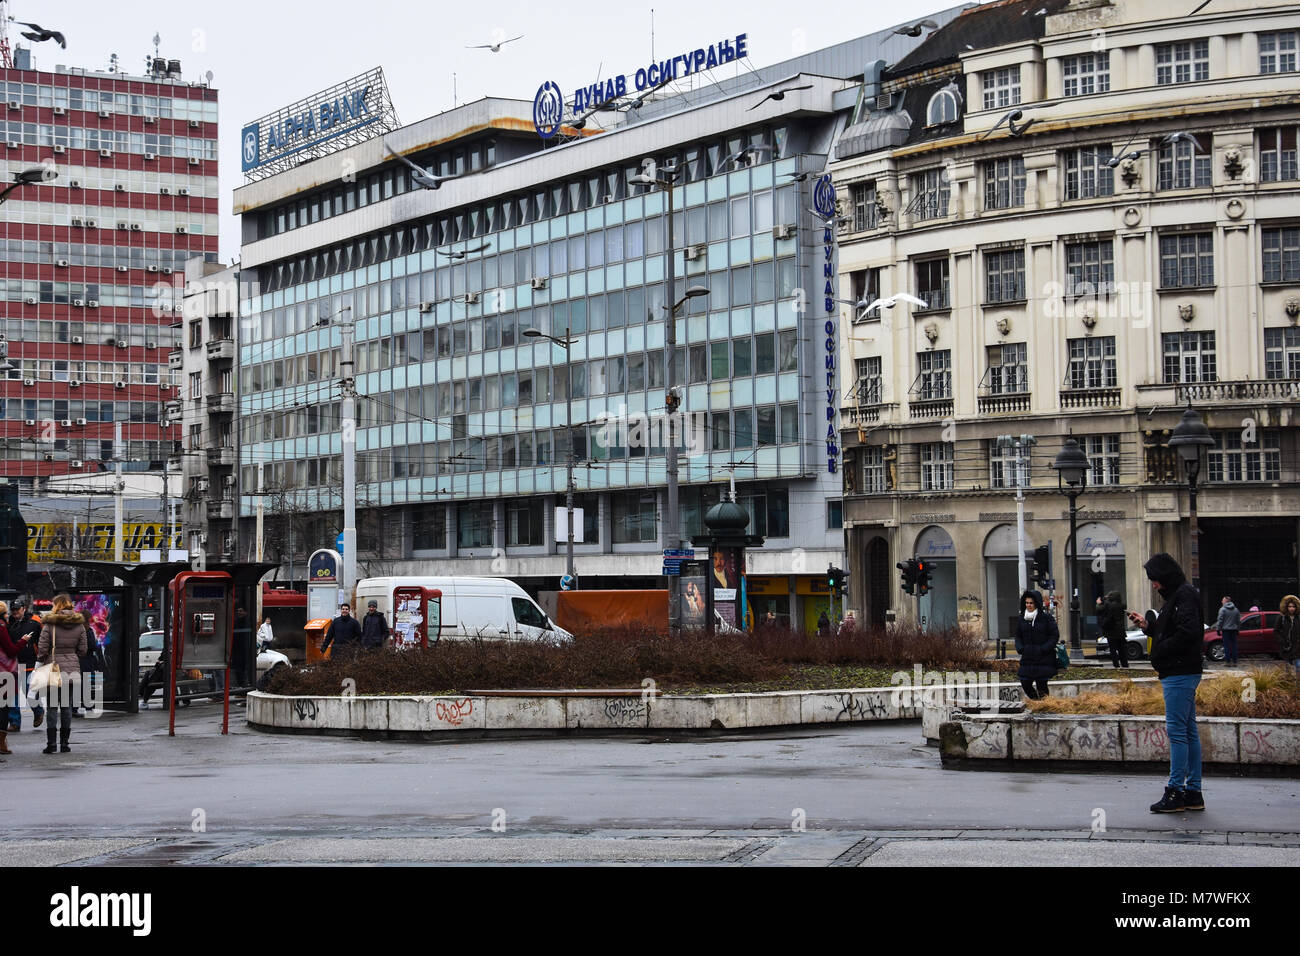 Belgrade, Serbia. February 7, 2017. Republic Square (Trg republike) on a cold day Stock Photo